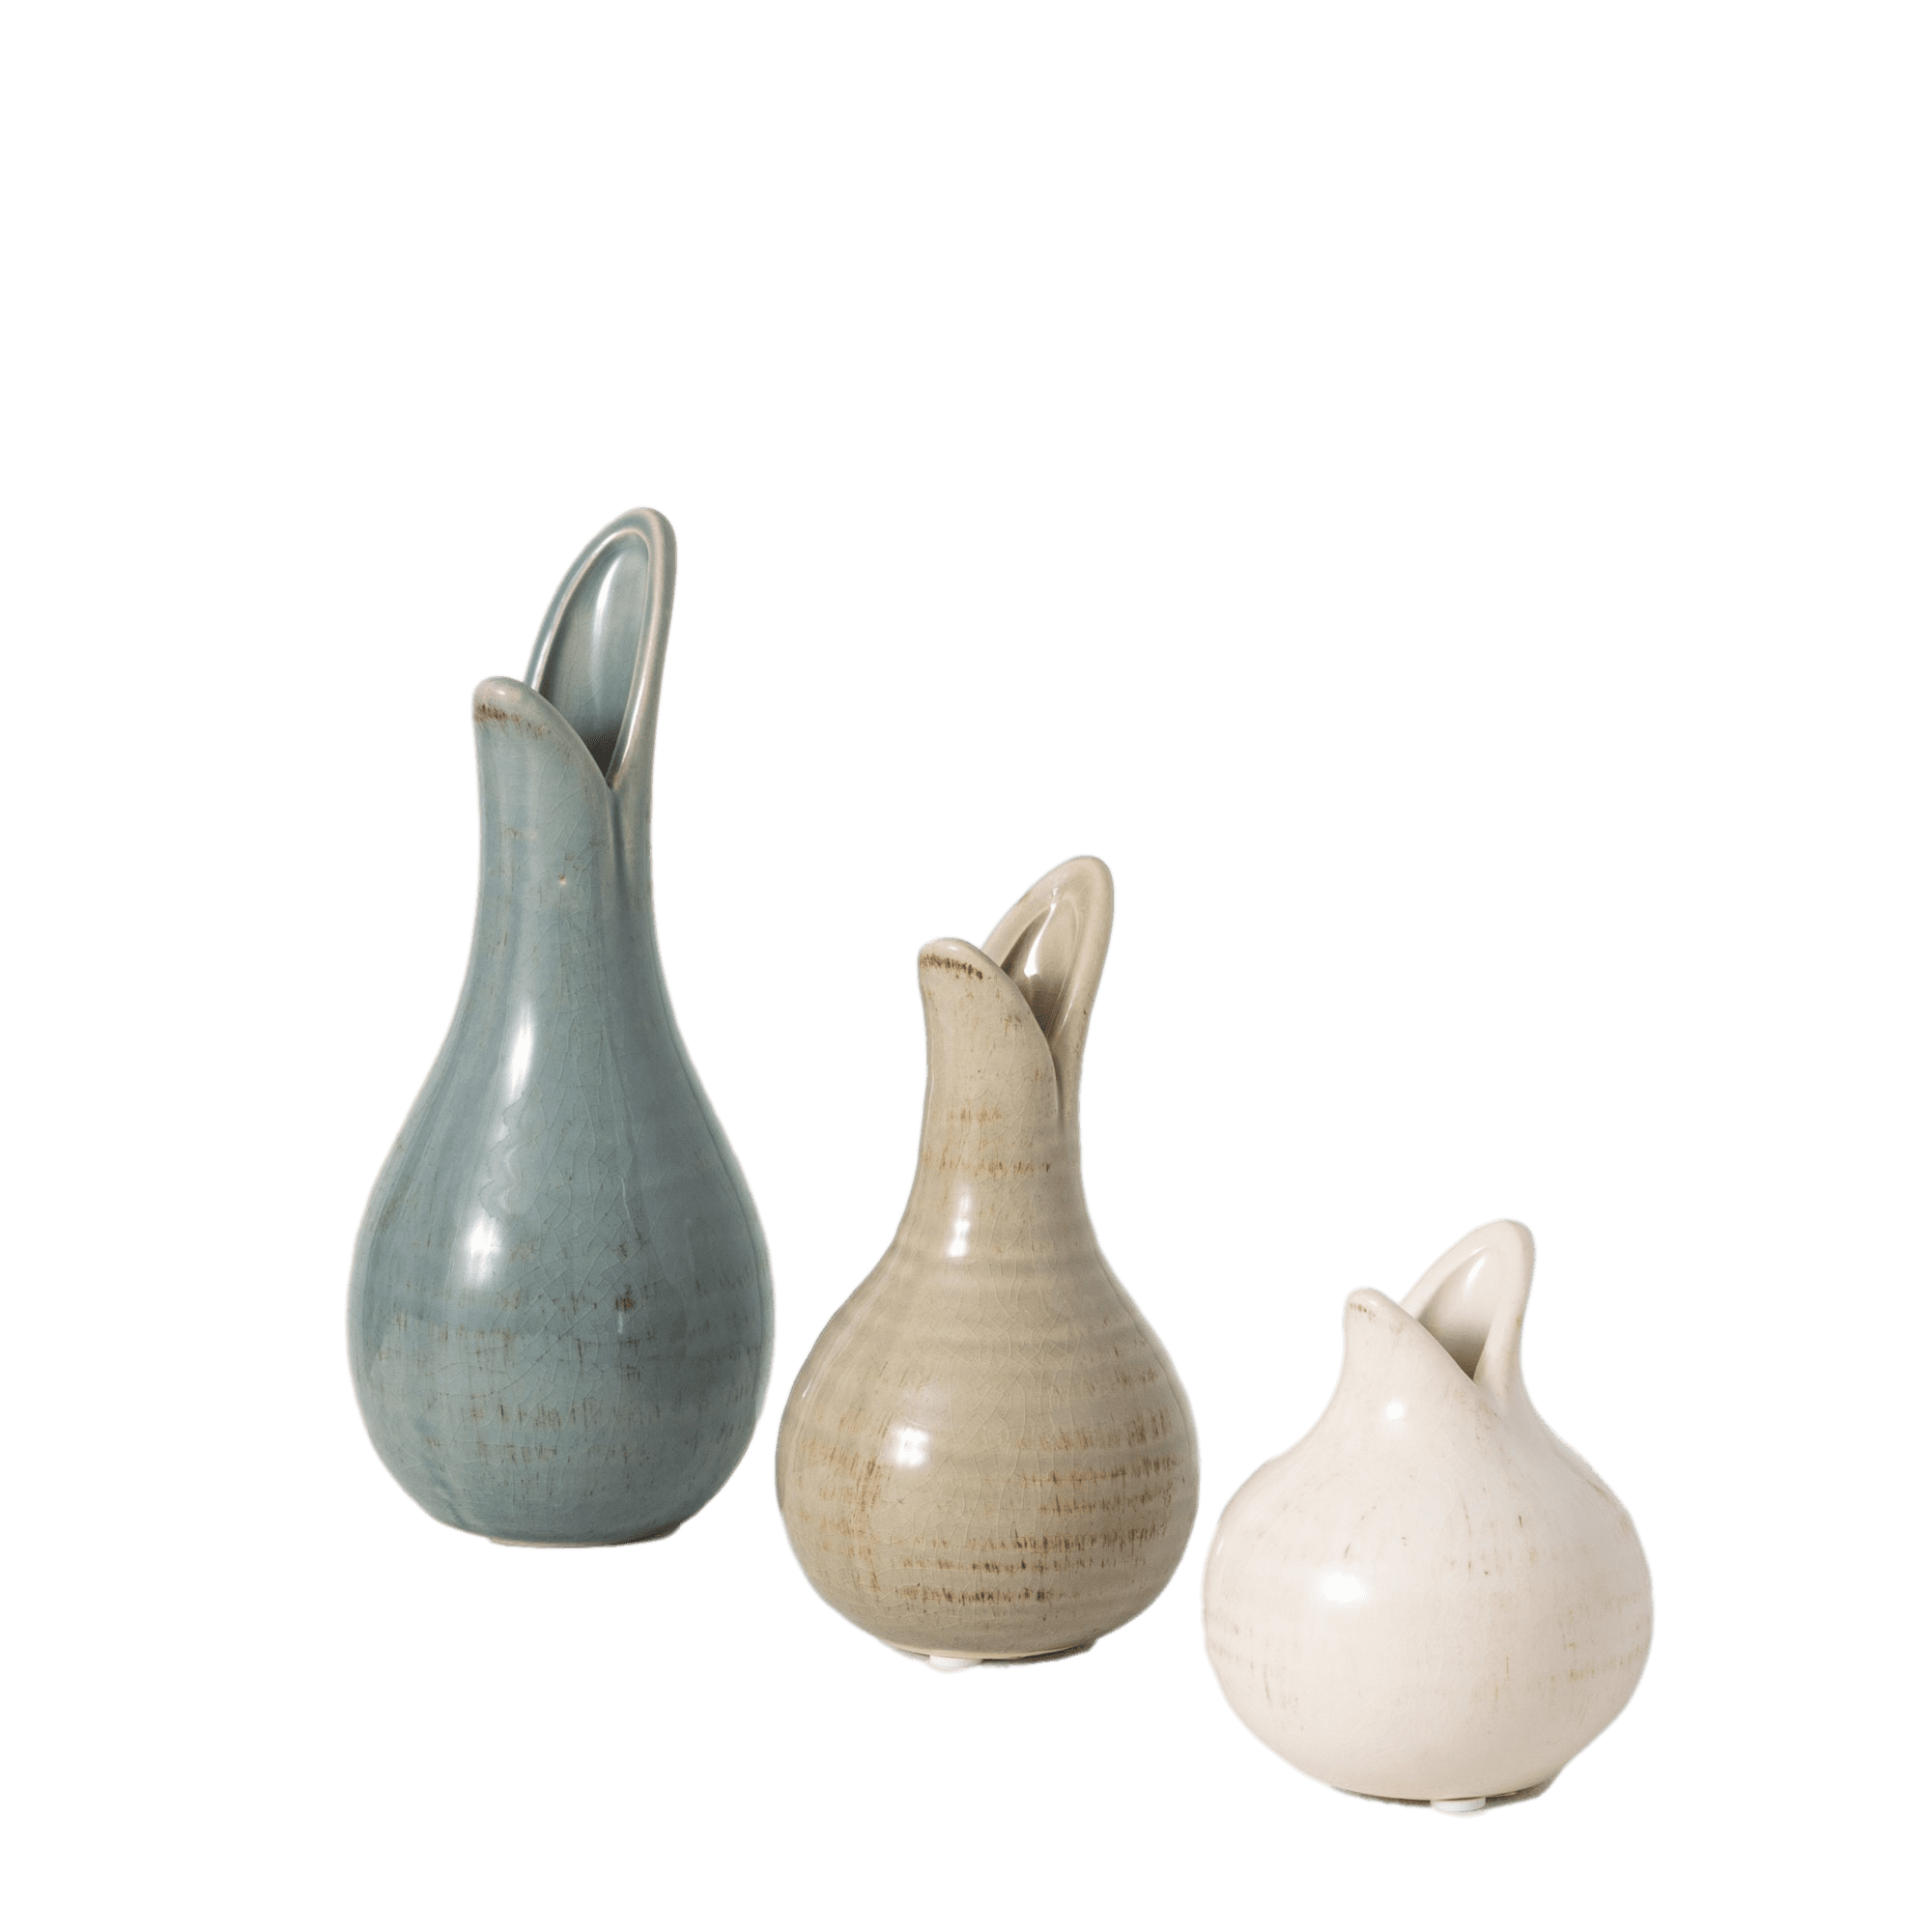 Details about   Ceramic Matte Vase Solid Color Flowerpot Flower Arrangement Home Art Decoration 